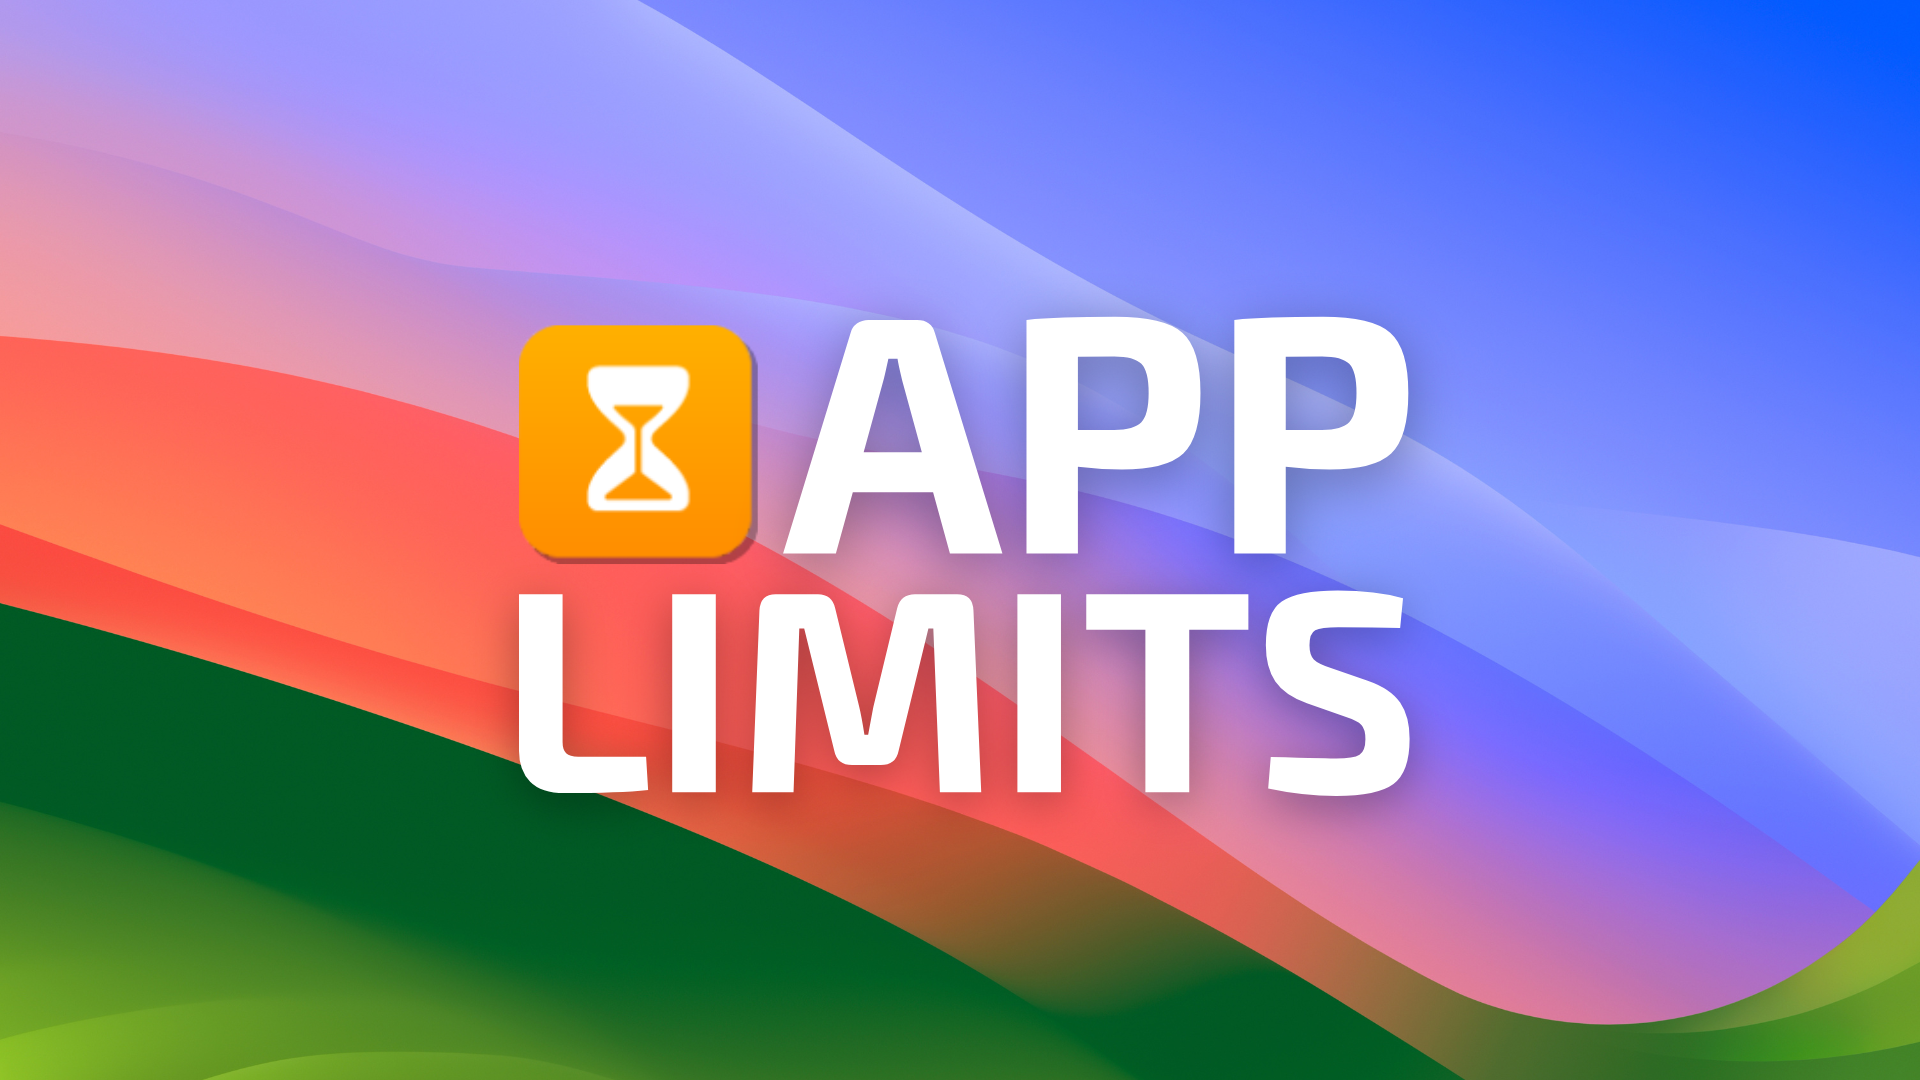 App Limits